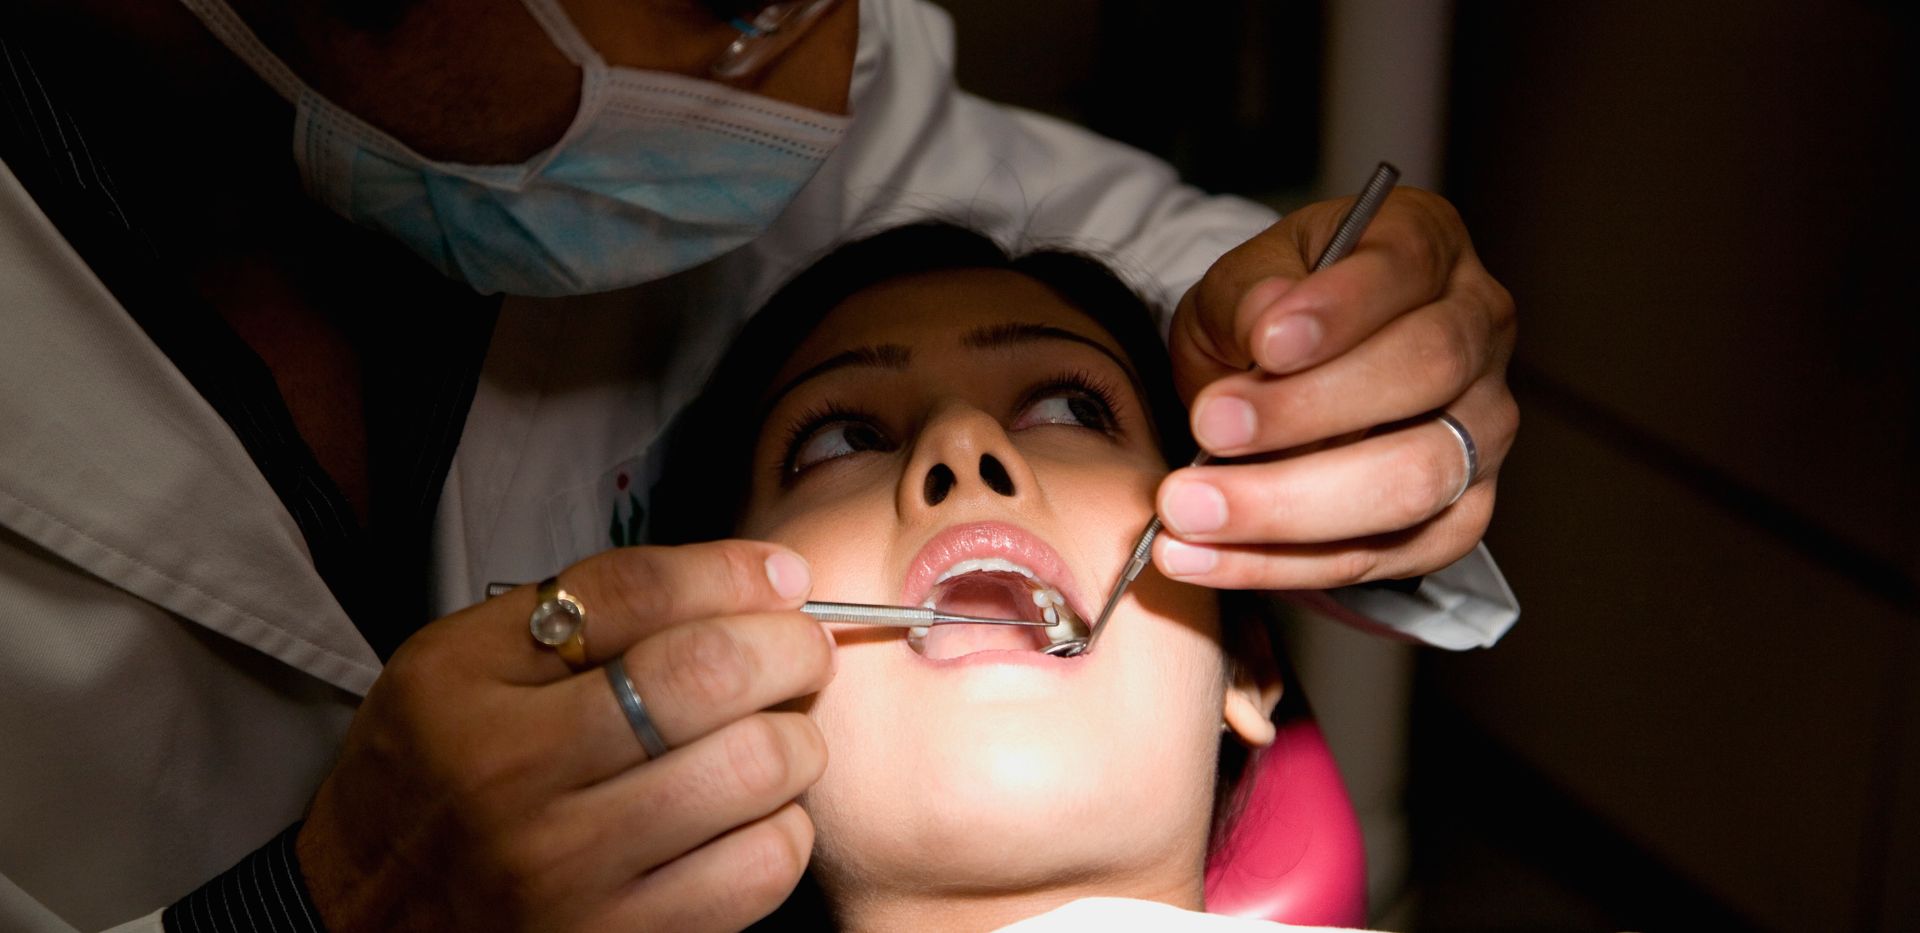 Pacjentka podczas wizyty u dentysty na badaniu jamy ustnej.